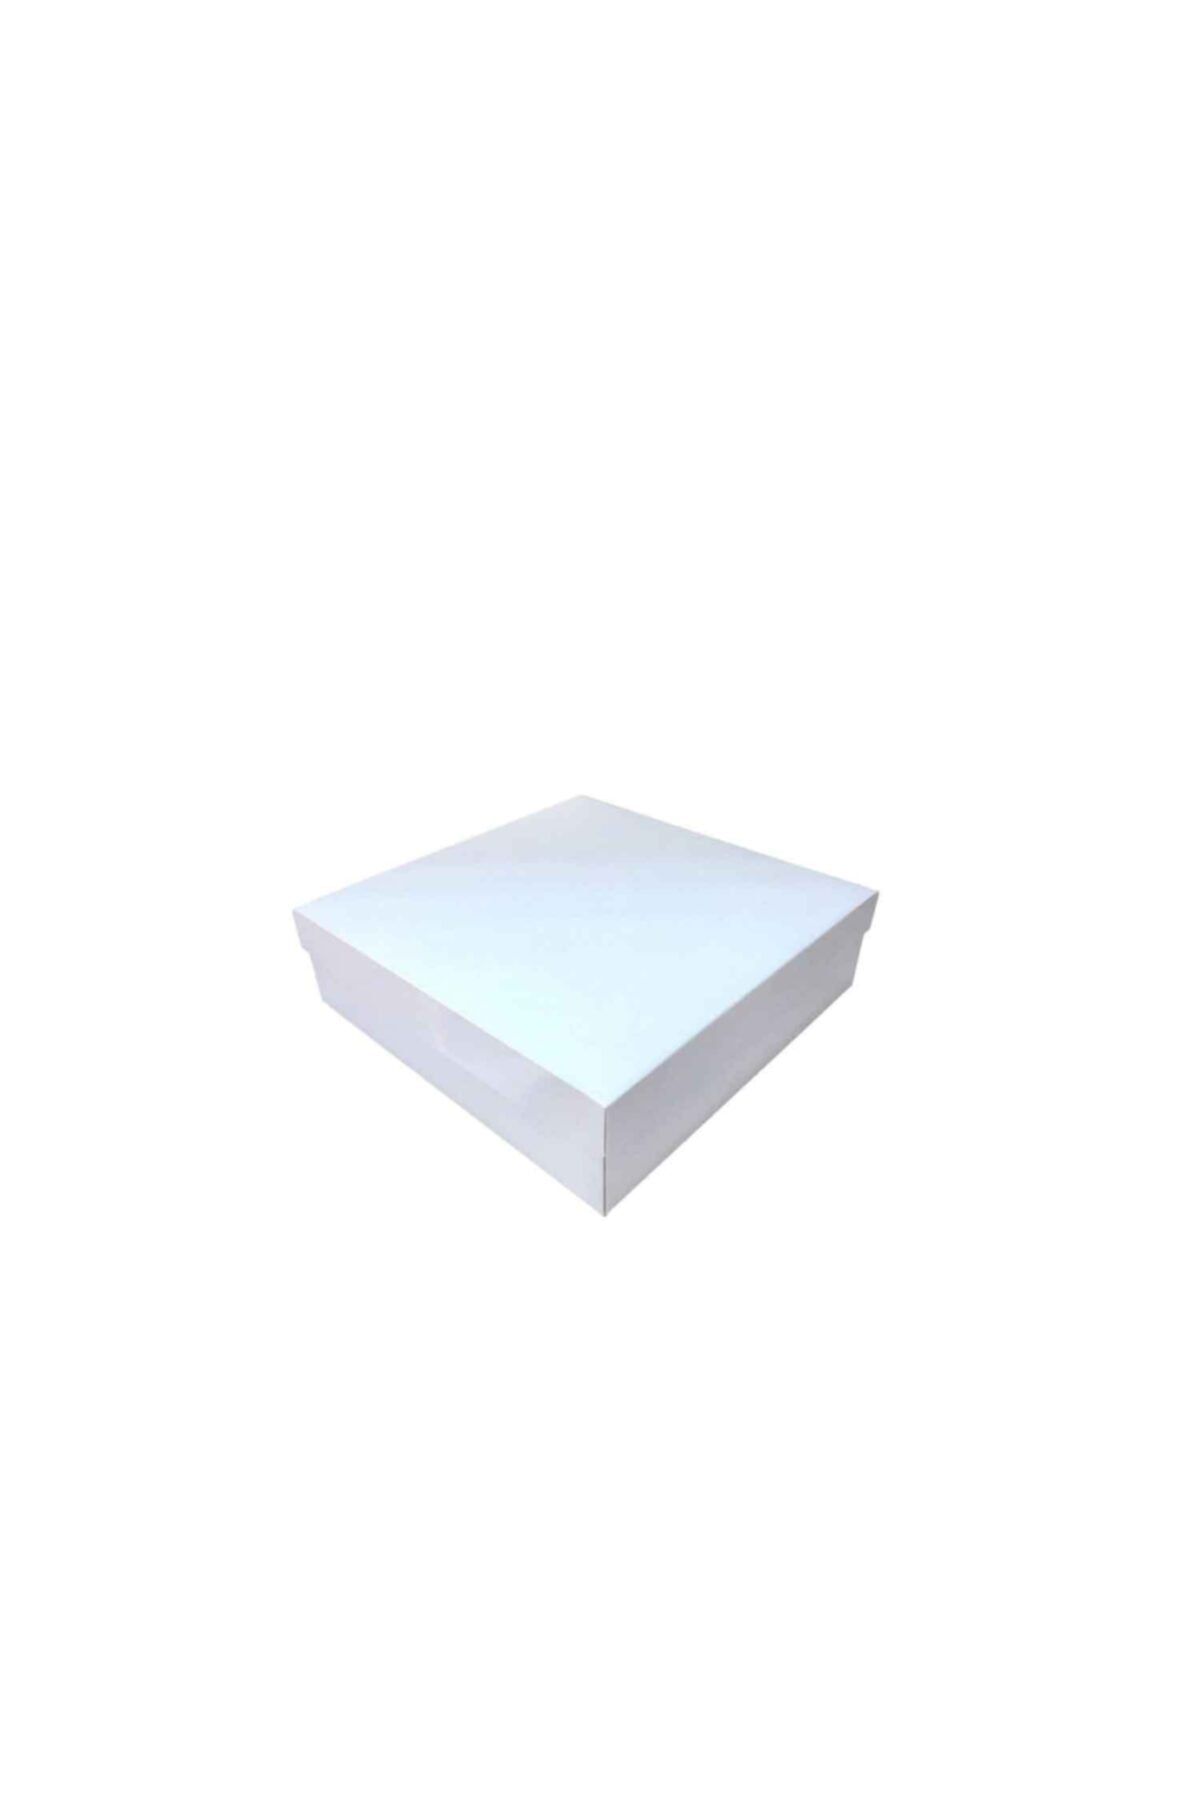 TT Tahtakale Toptancıları Komple Karton Kutu 15x15x3 Cm (10 Adet) Beyaz